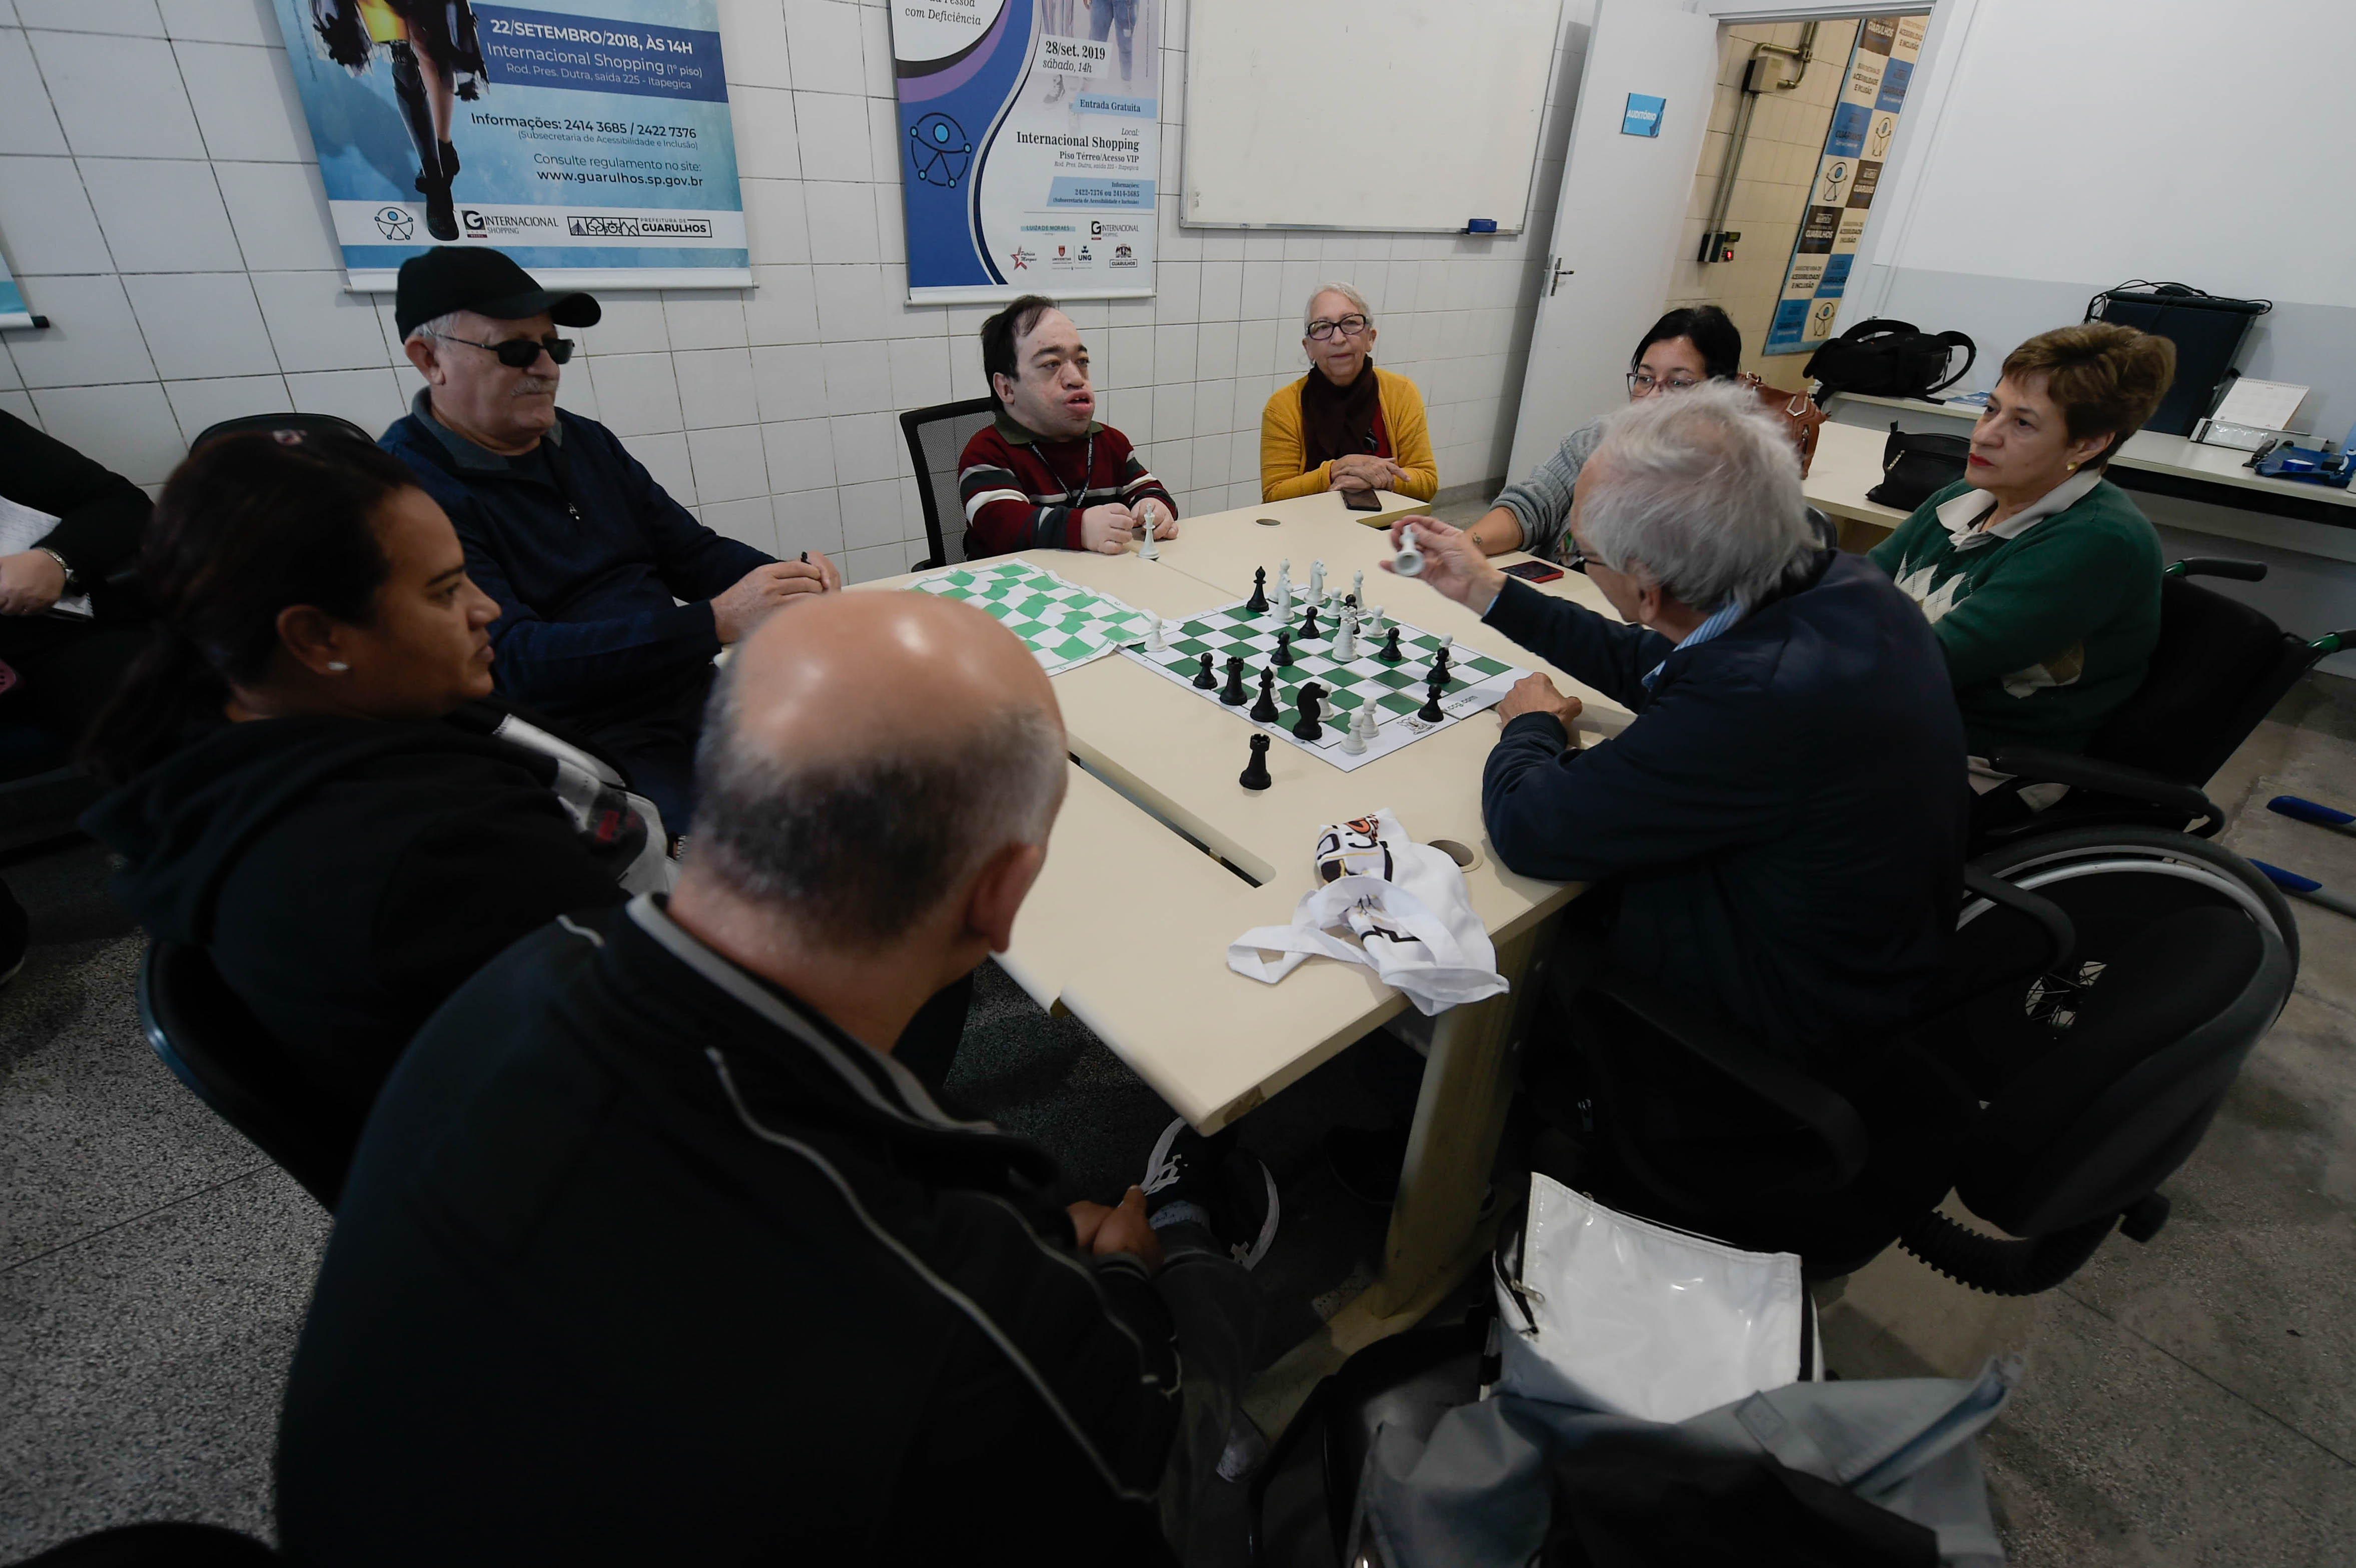 Oficina sobre jogo de xadrez tem inscrições abertas para pessoas com  deficiência - GuarulhosWeb